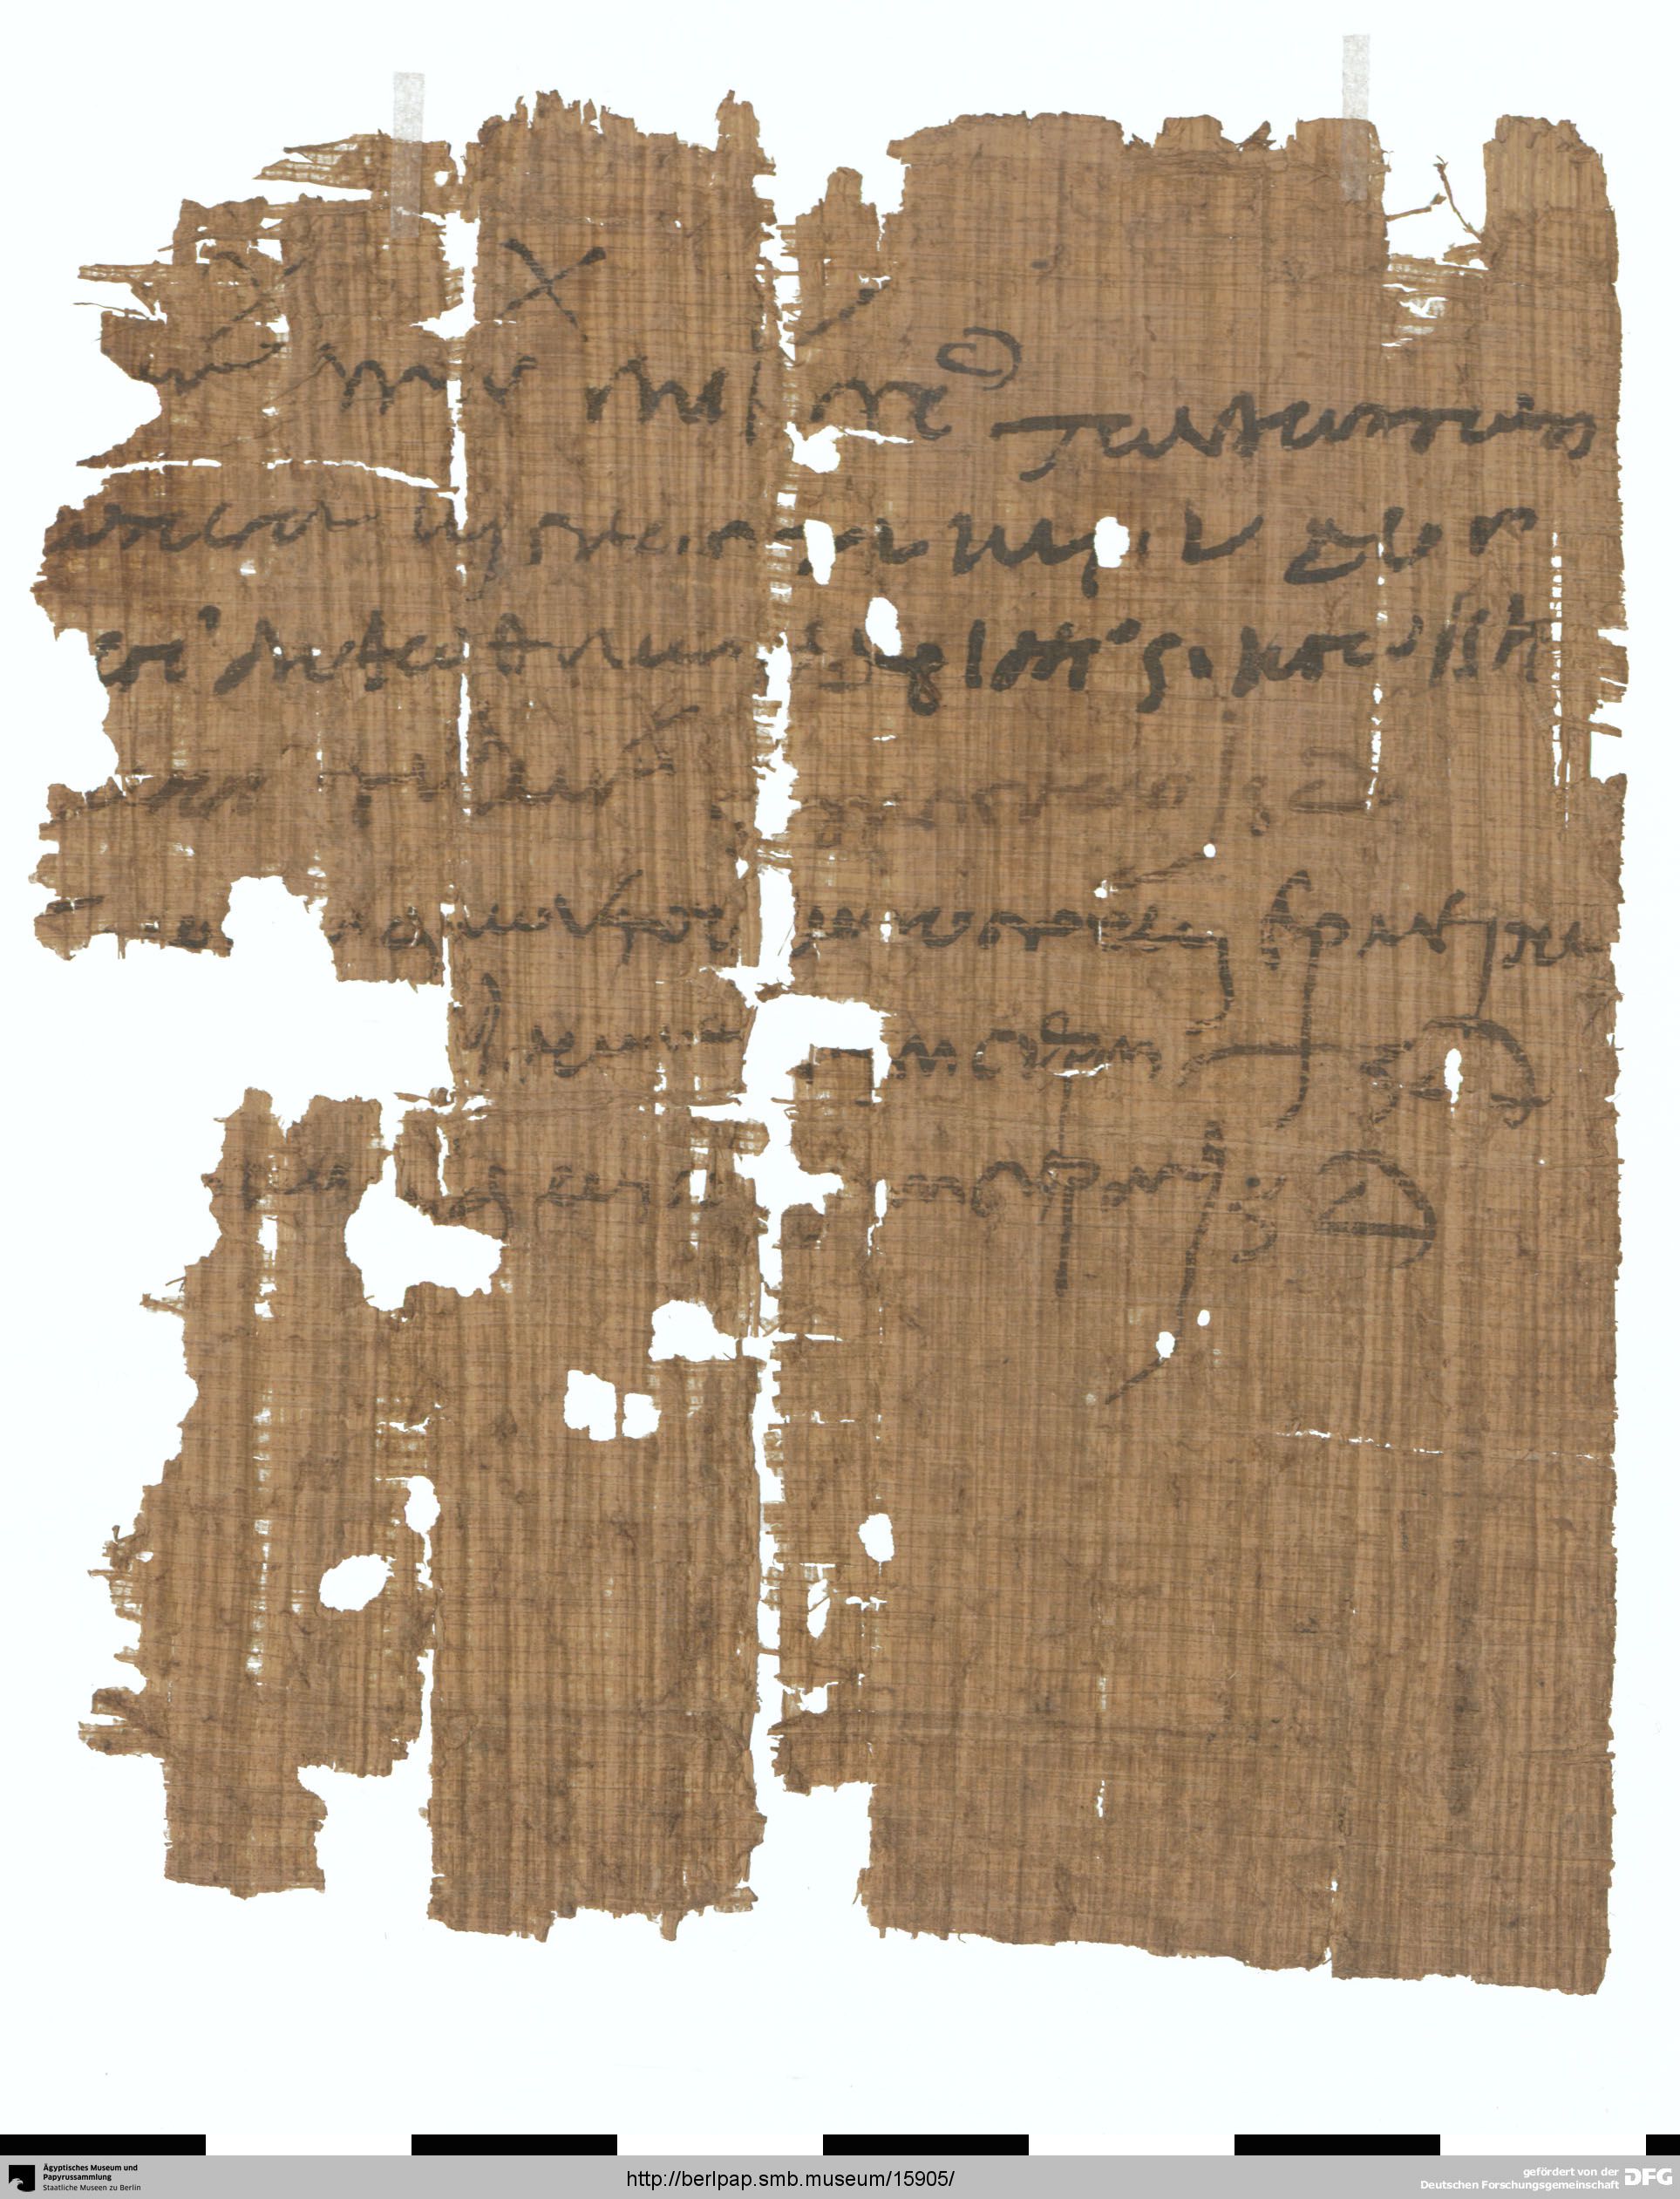 http://berlpap.smb.museum/Original/P_25613_R_001.jpg (Ägyptisches Museum und Papyrussammlung, Staatliche Museen zu Berlin CC BY-NC-SA)